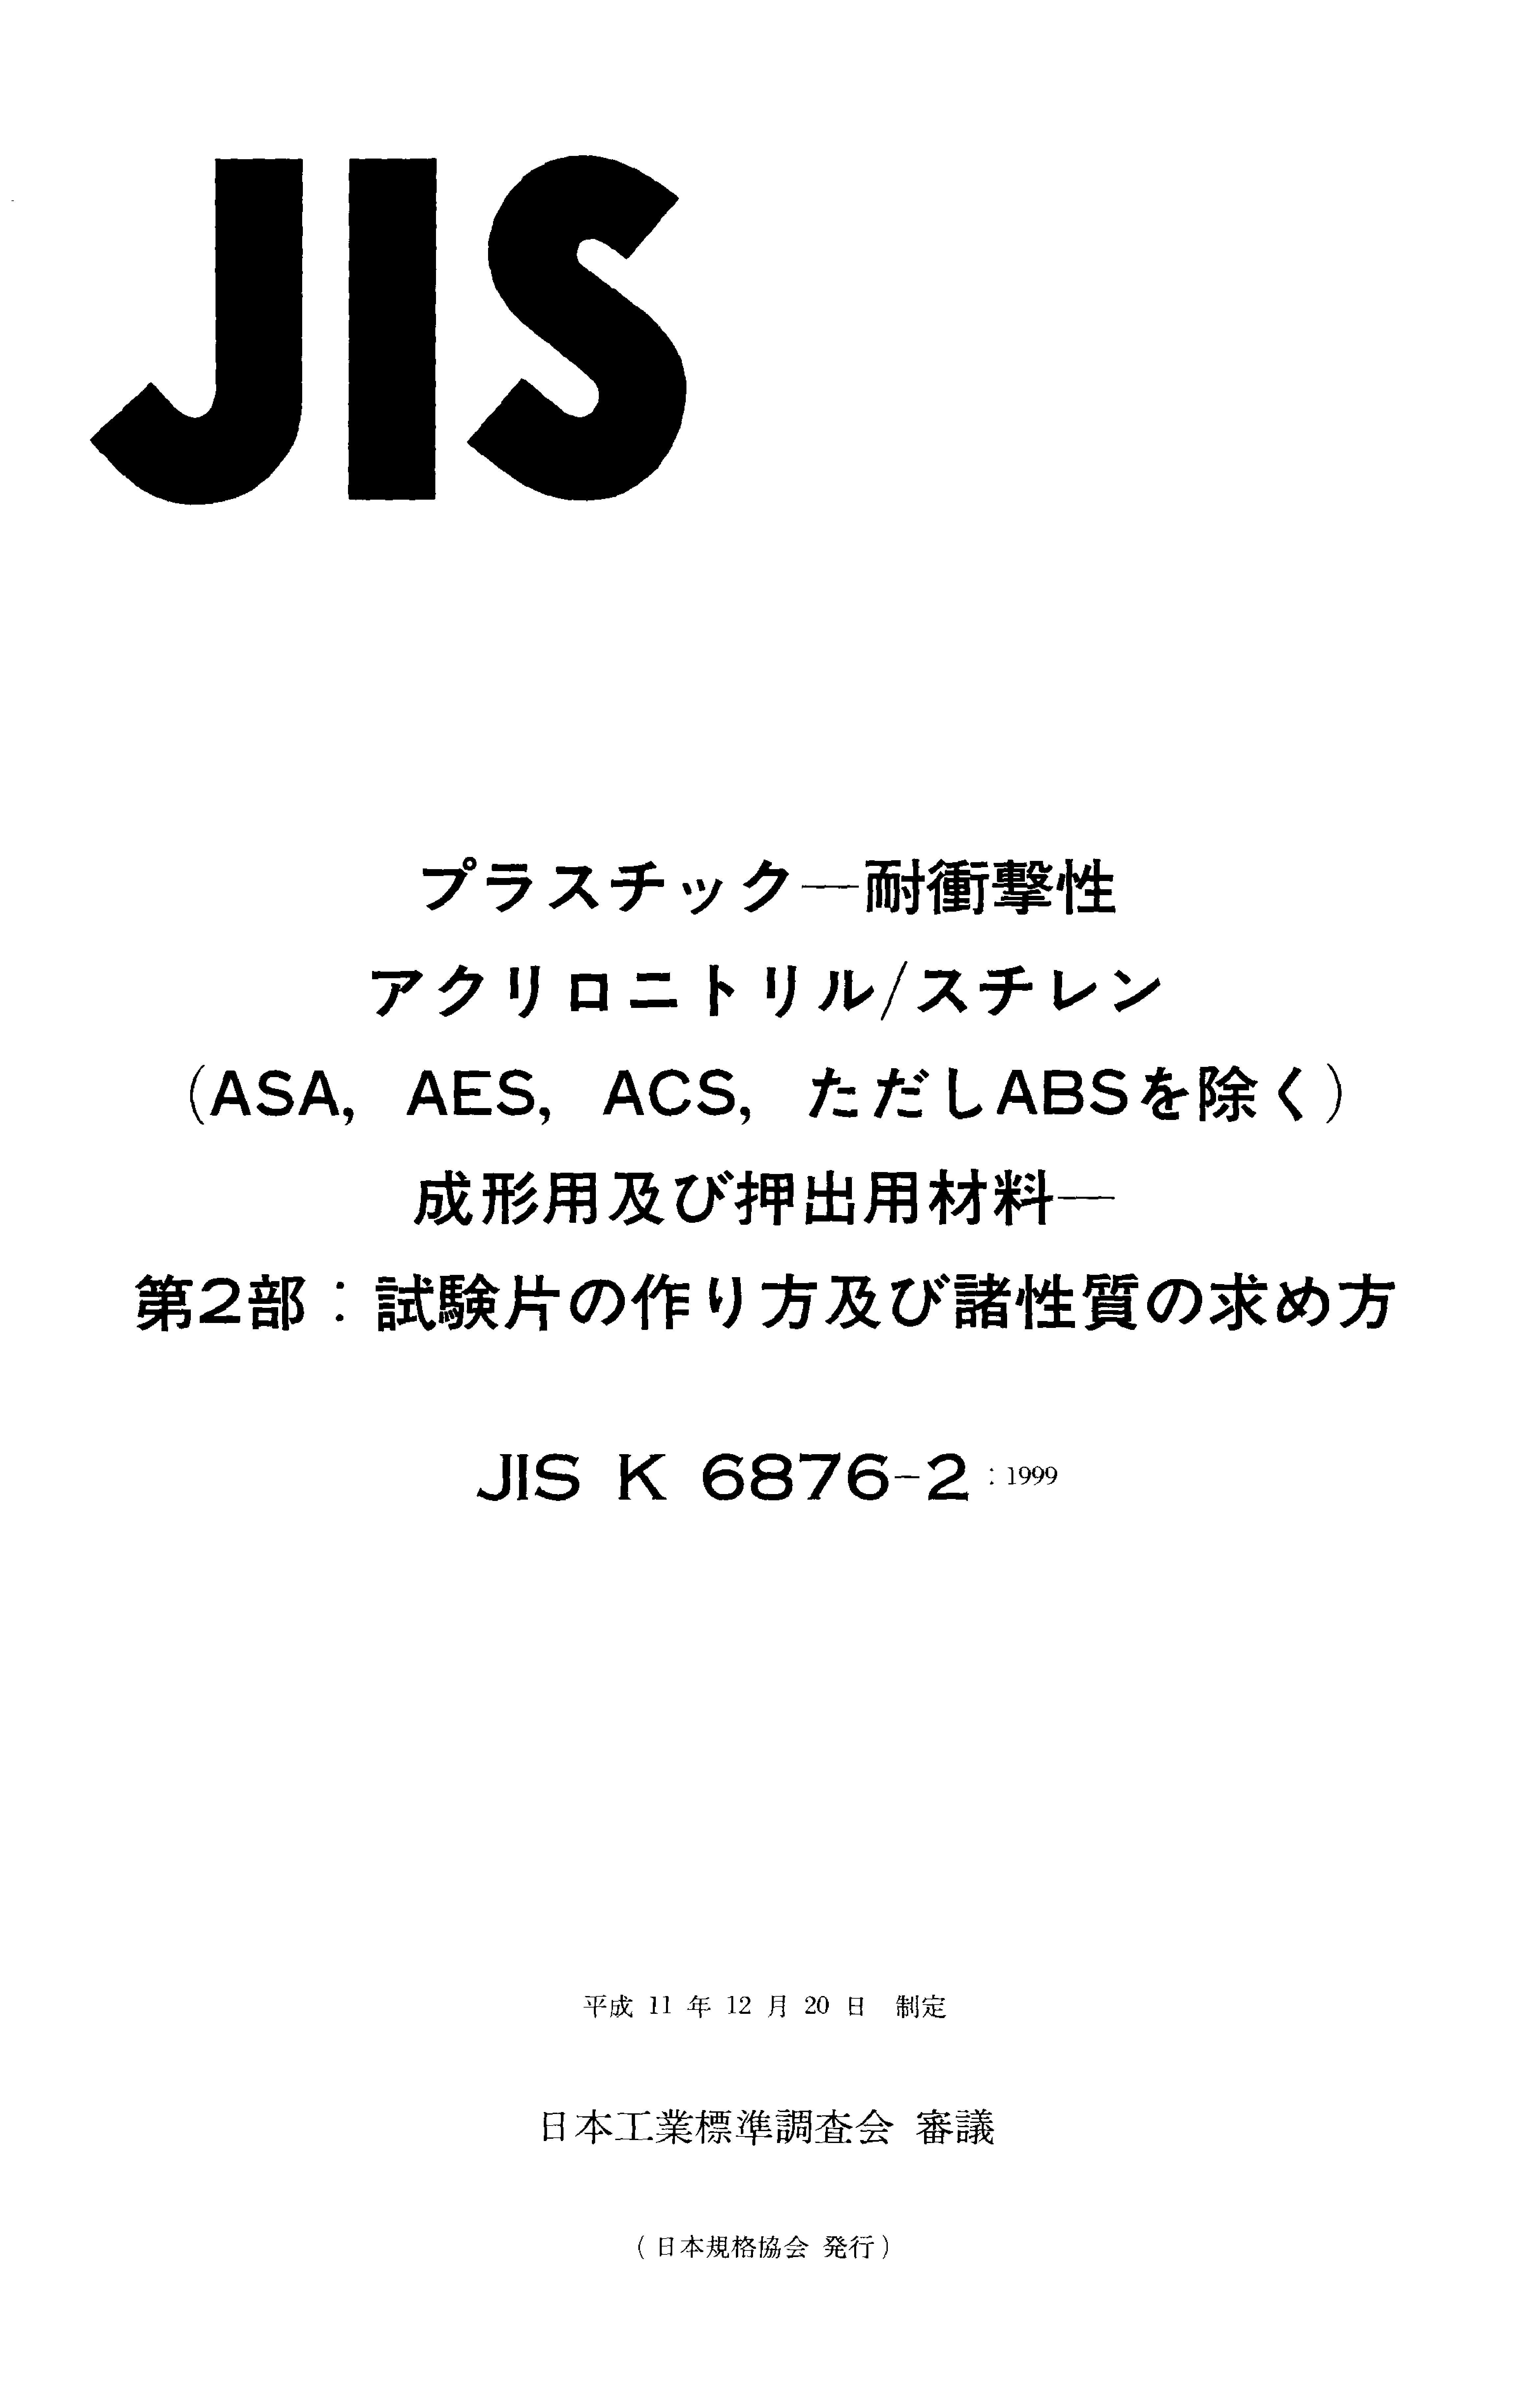 JIS K 6876-2:1999封面图